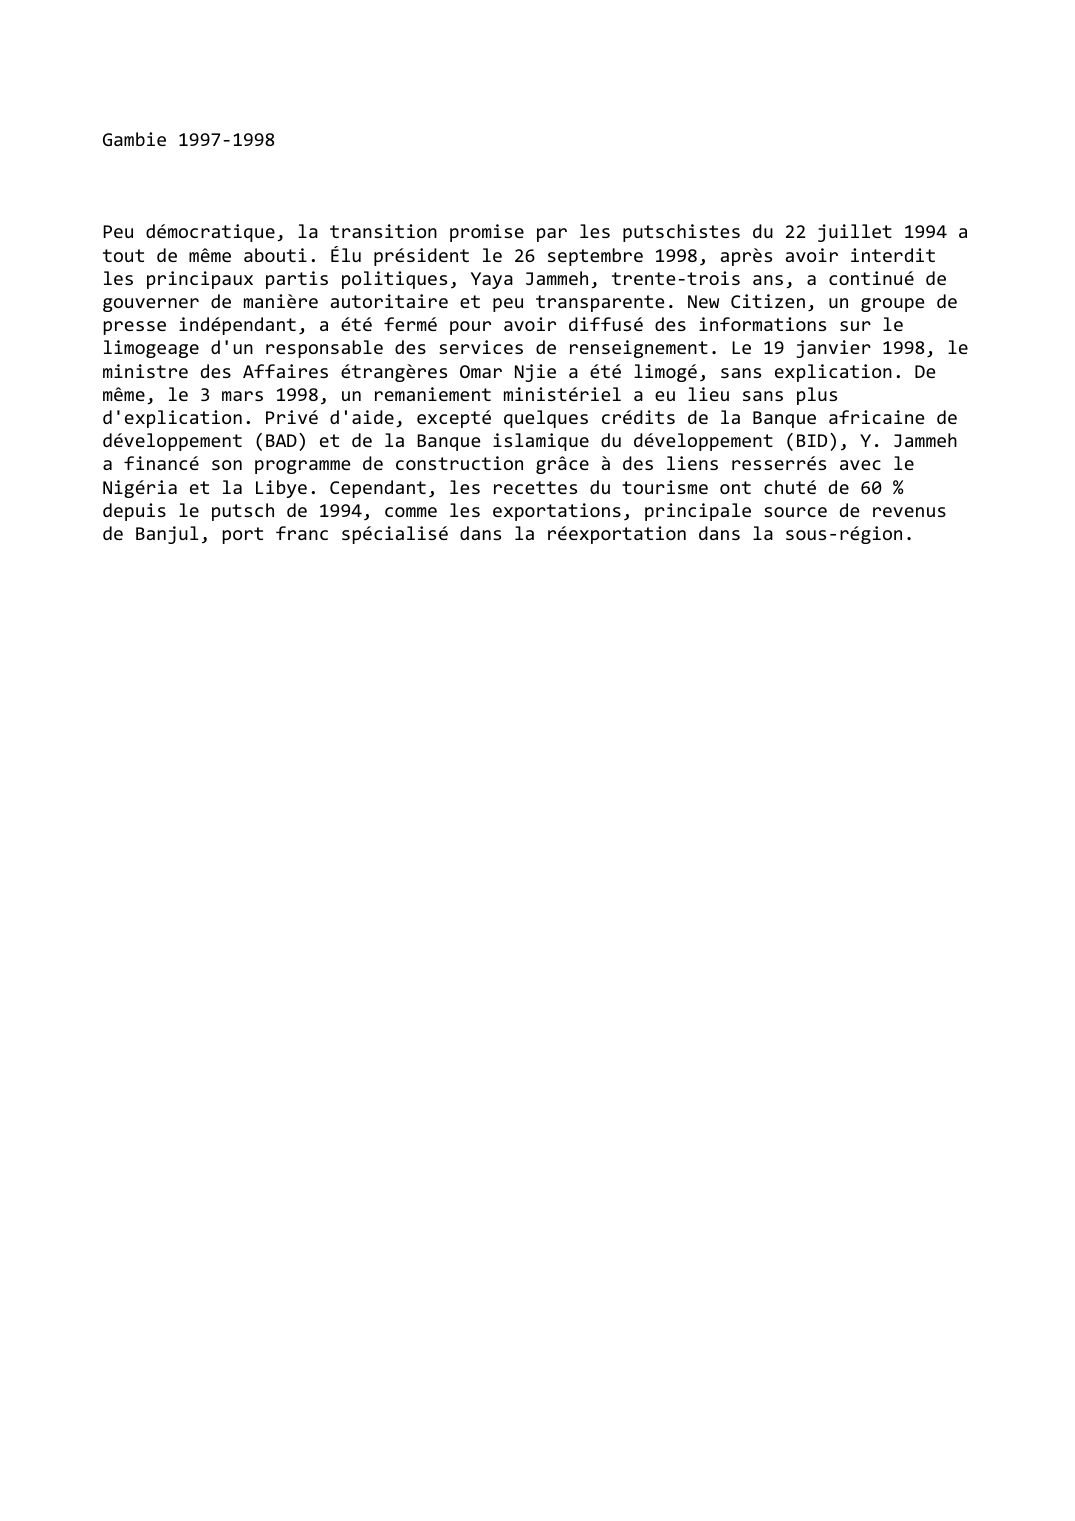 Prévisualisation du document Gambie (1997-1998)